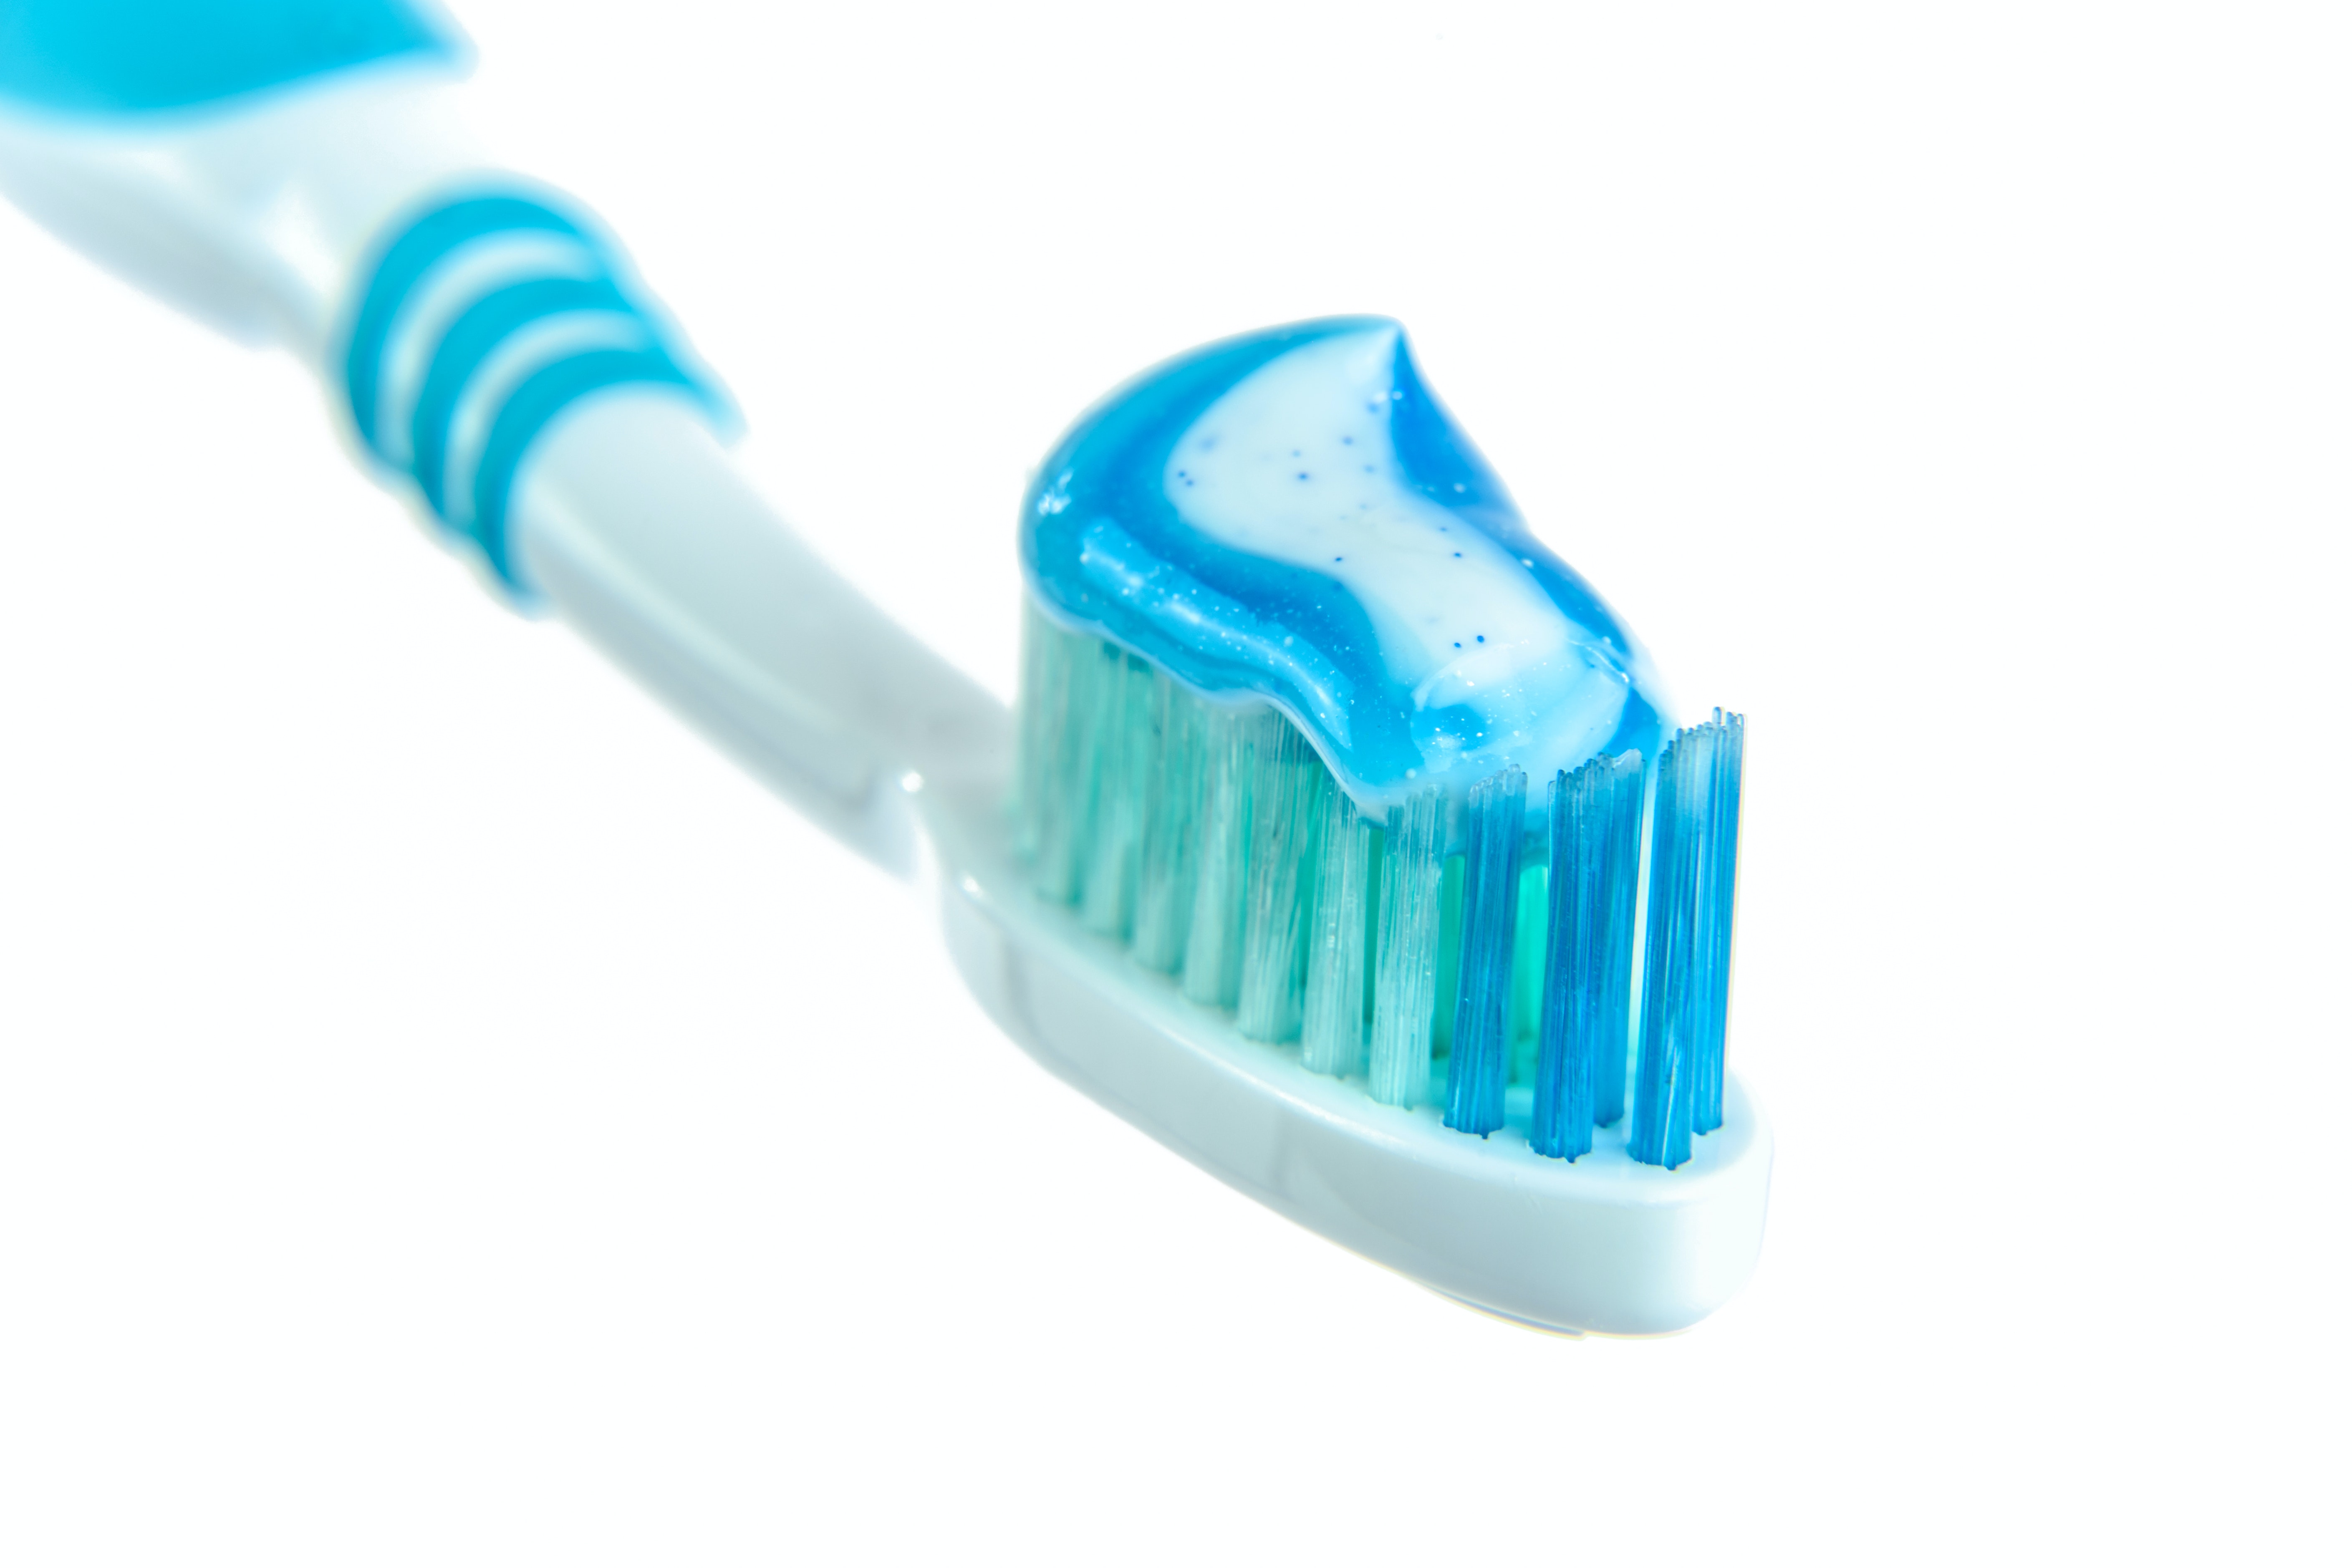 प्रत्येक कंपनी आता टूथपेस्ट तयार करण्यासाठी जवळजवळ समान सूत्र स्वीकारते.